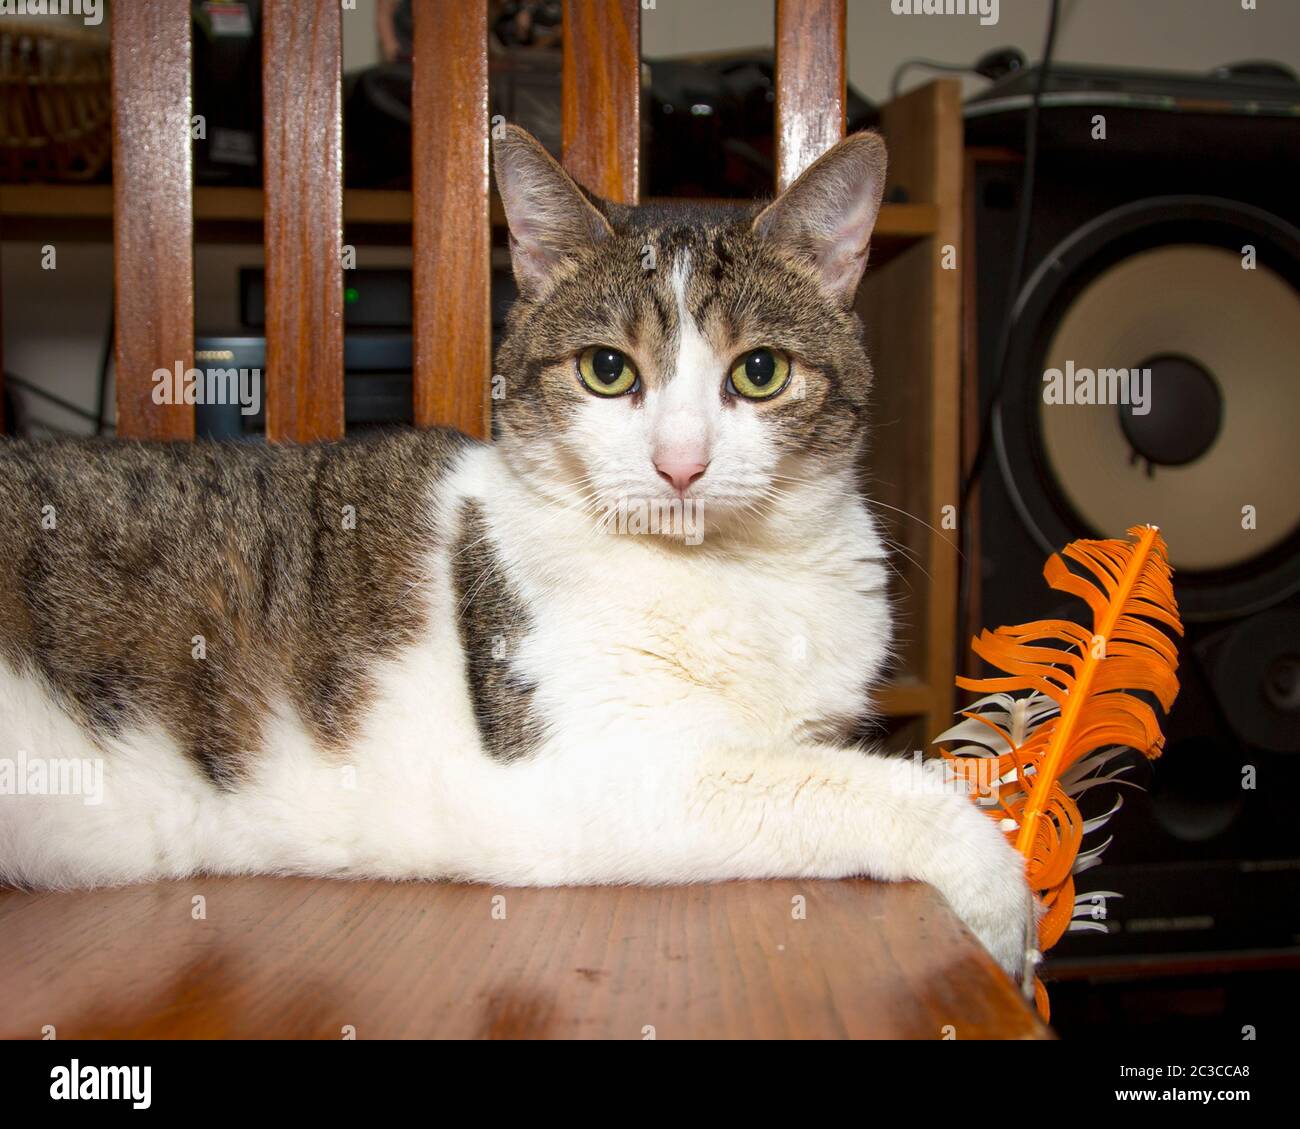 Ritratto di un gatto a strisce grigie e bianche che si rilassa sulla sedia Foto Stock